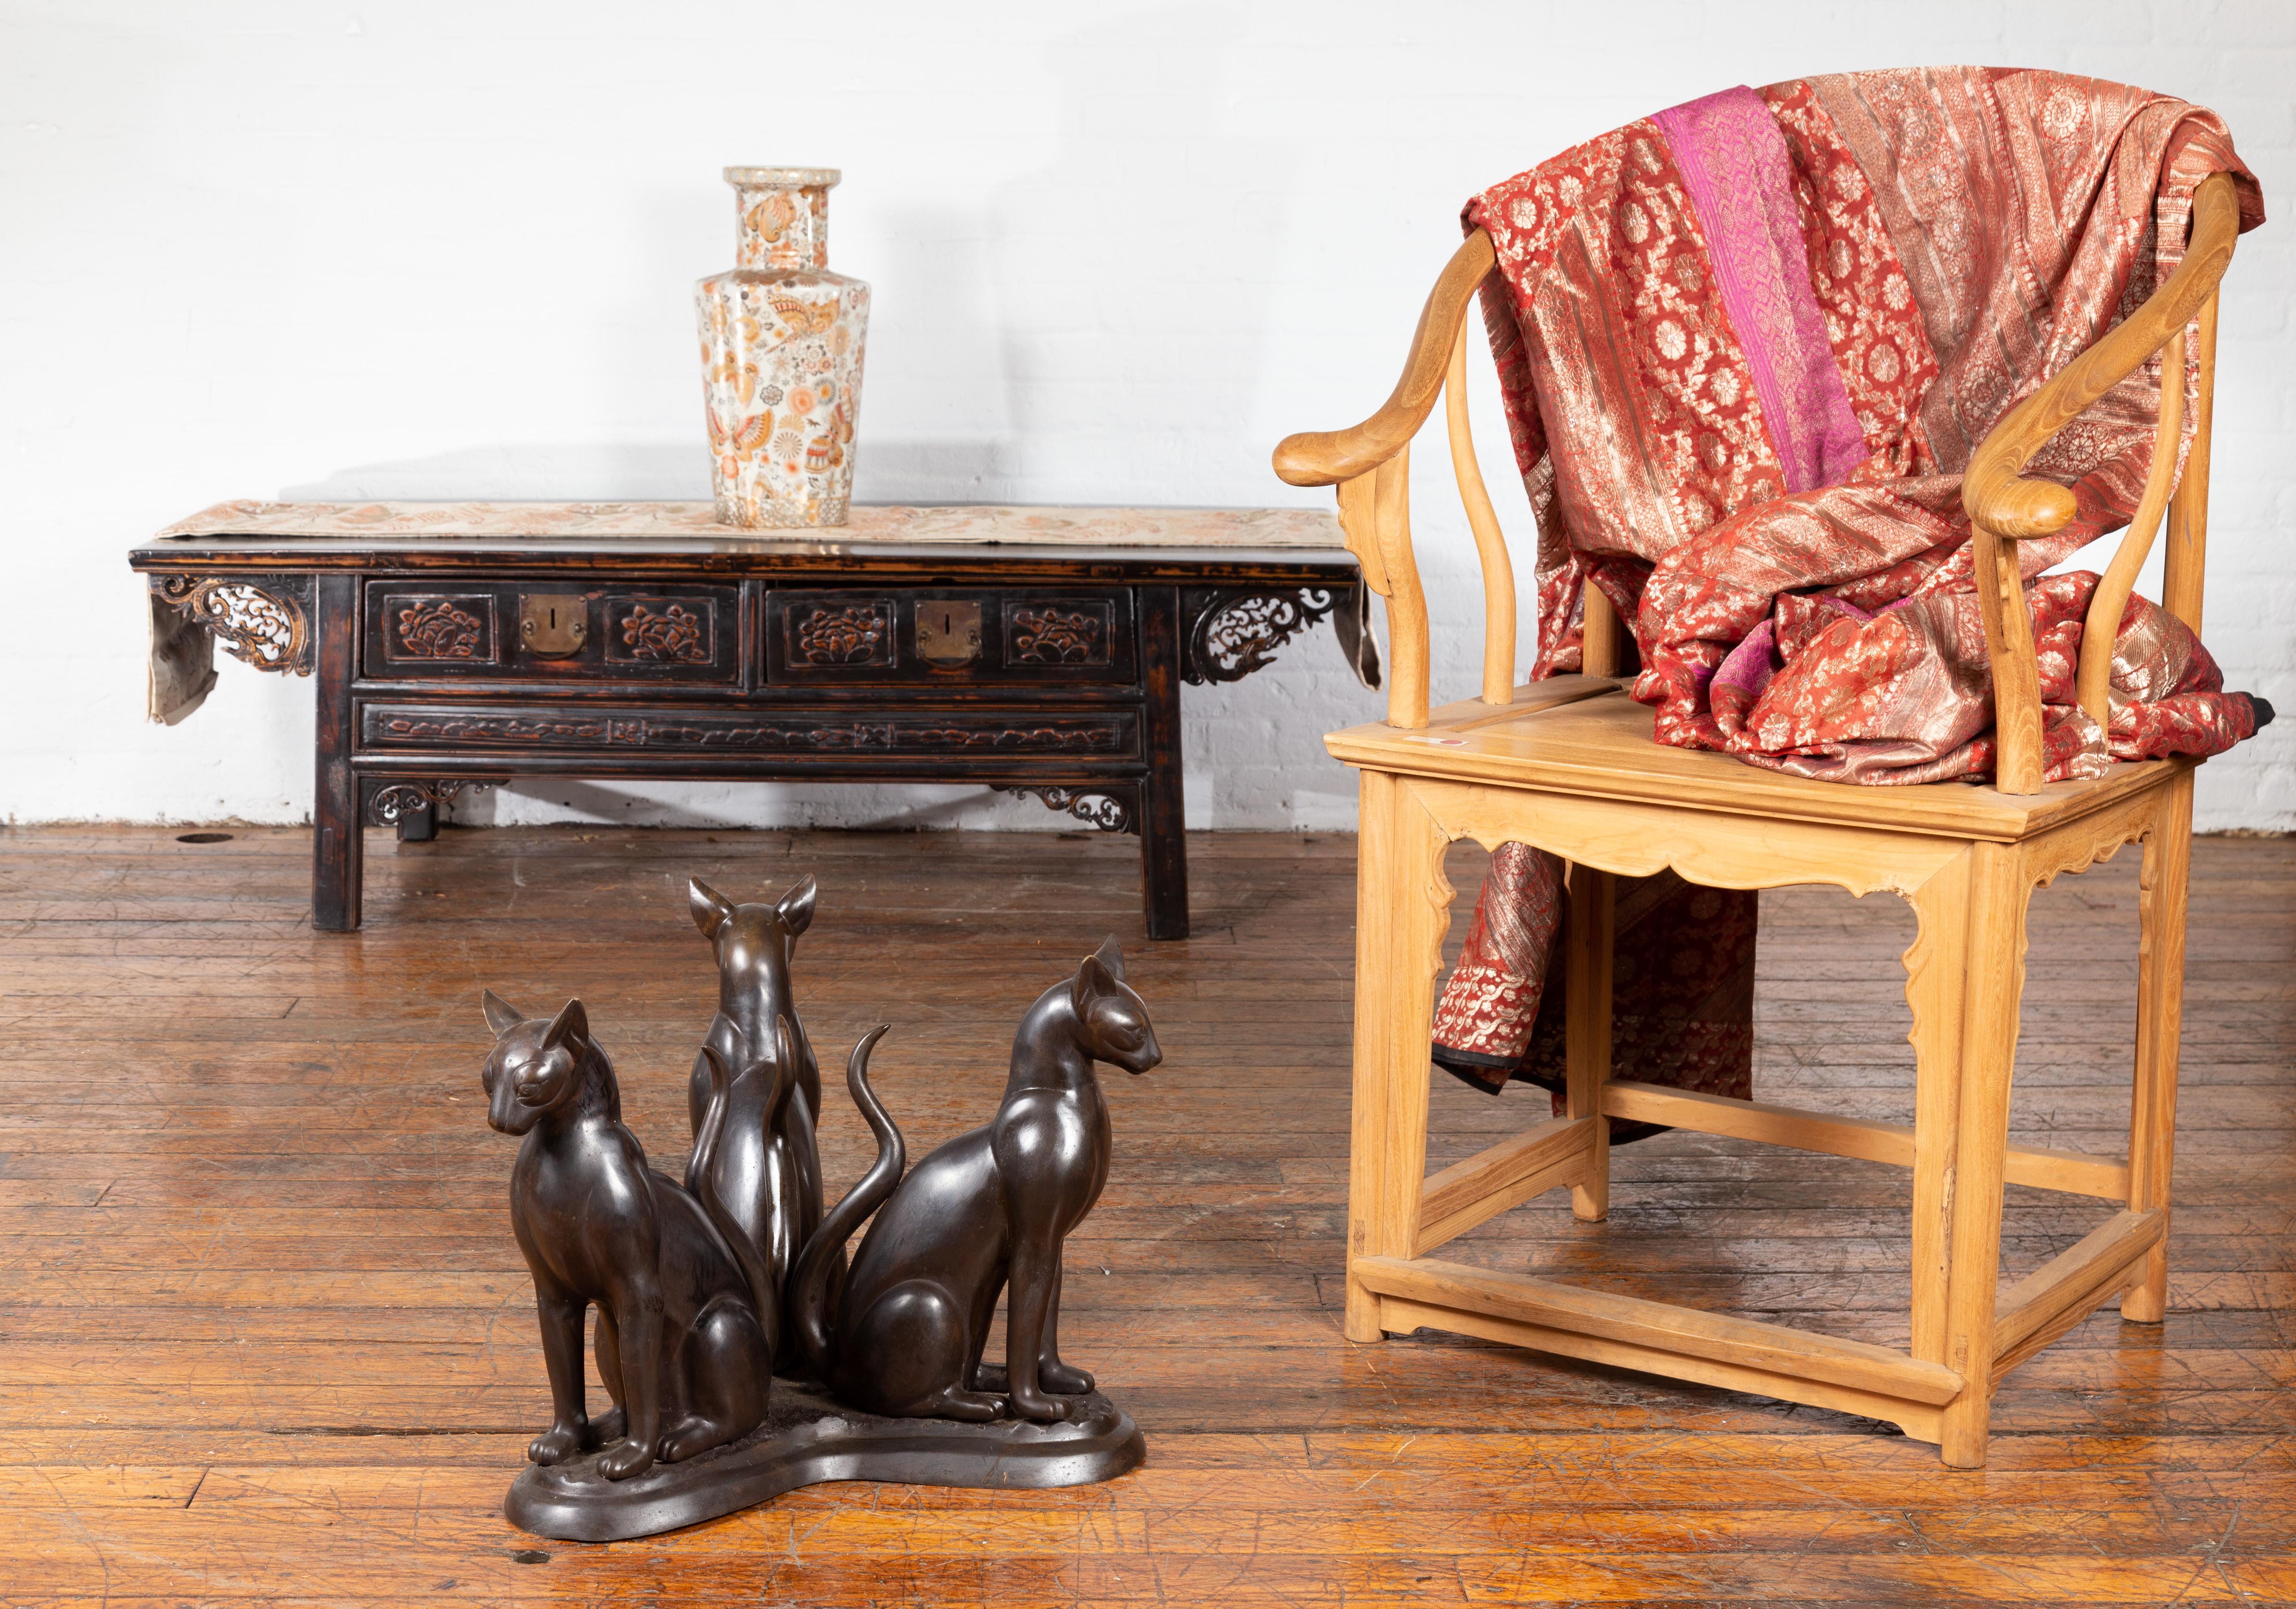 Base de table basse en bronze coulé à la cire perdue, triple chat, du milieu du 20e siècle. Nous avons actuellement deux tables disponibles, vendues 2 500 $ chacune. Créé avec la technique traditionnelle de la cire perdue (à la cire Perdue) qui